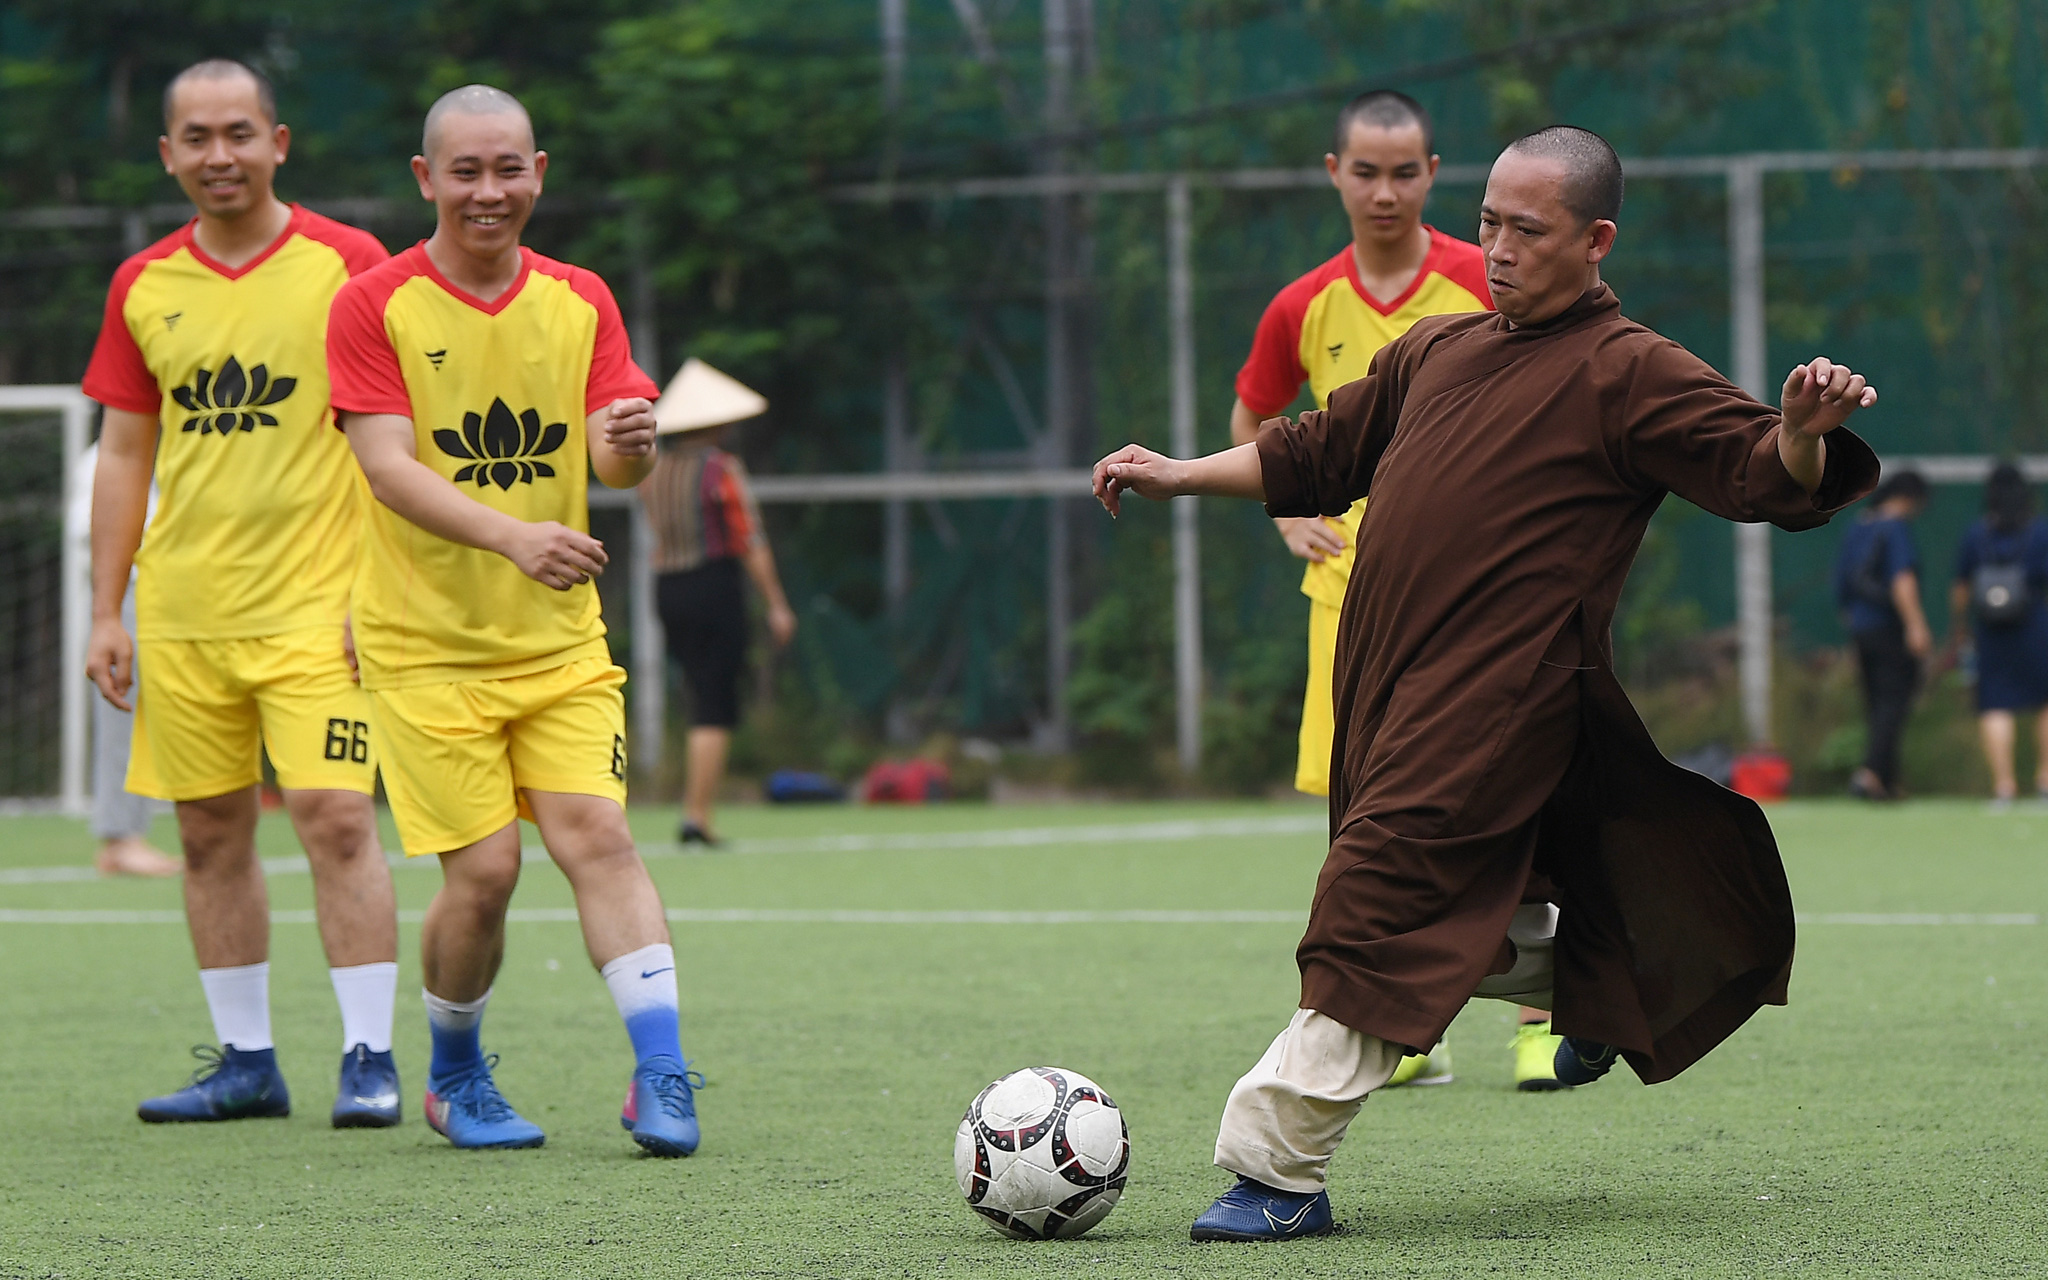 Khi các nhà sư xỏ giày chơi bóng: Một nét đẹp gần gũi của Phật giáo trong cuộc sống Việt